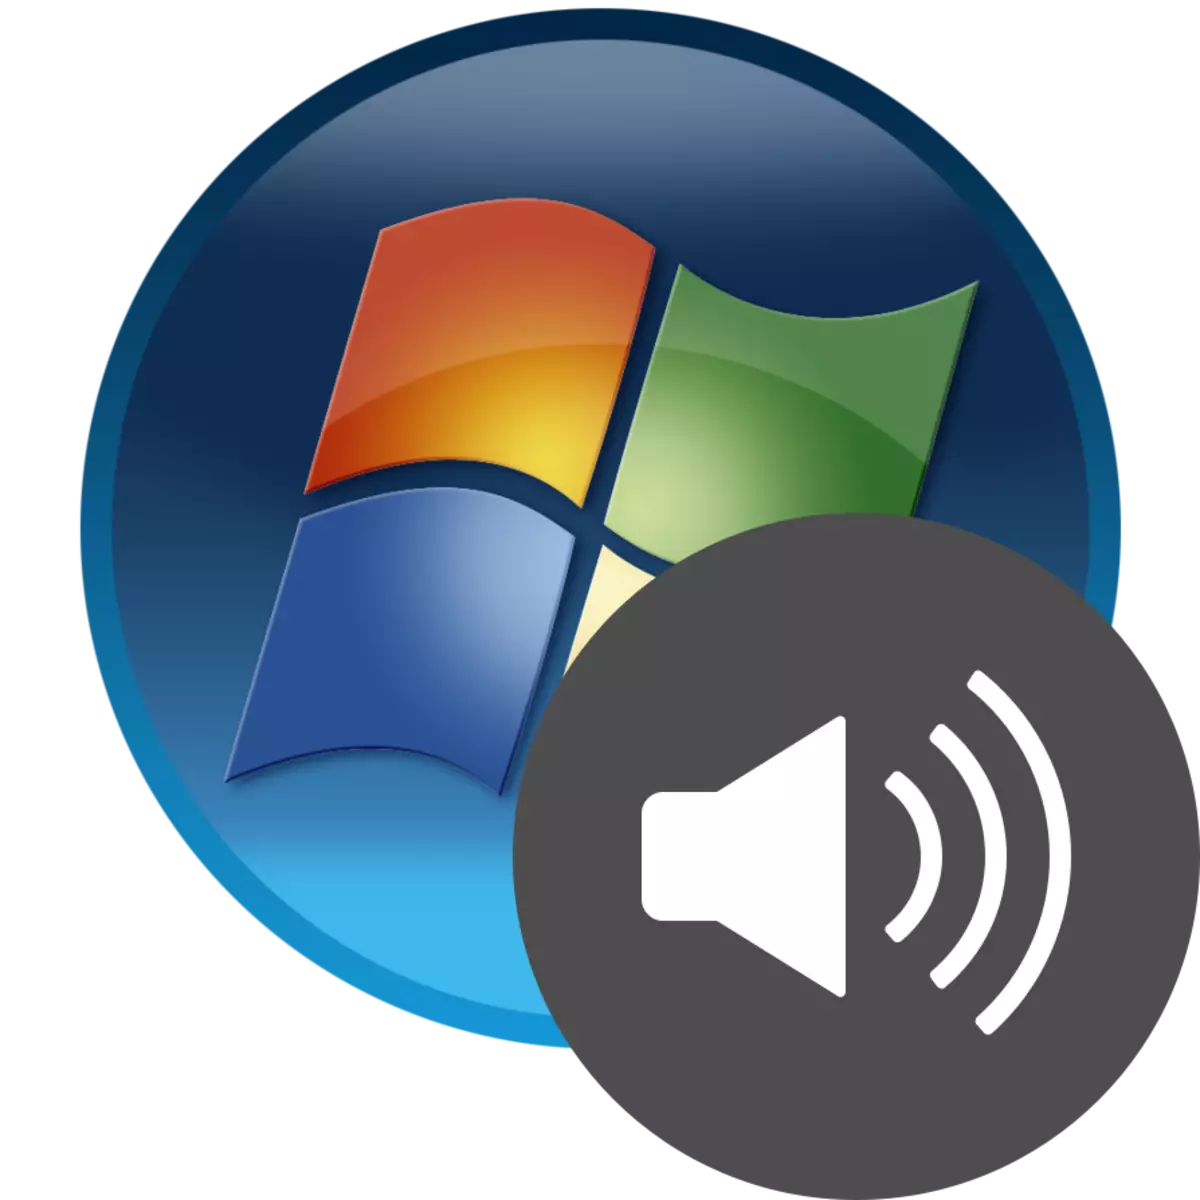 Activering van geluid in Windows 7